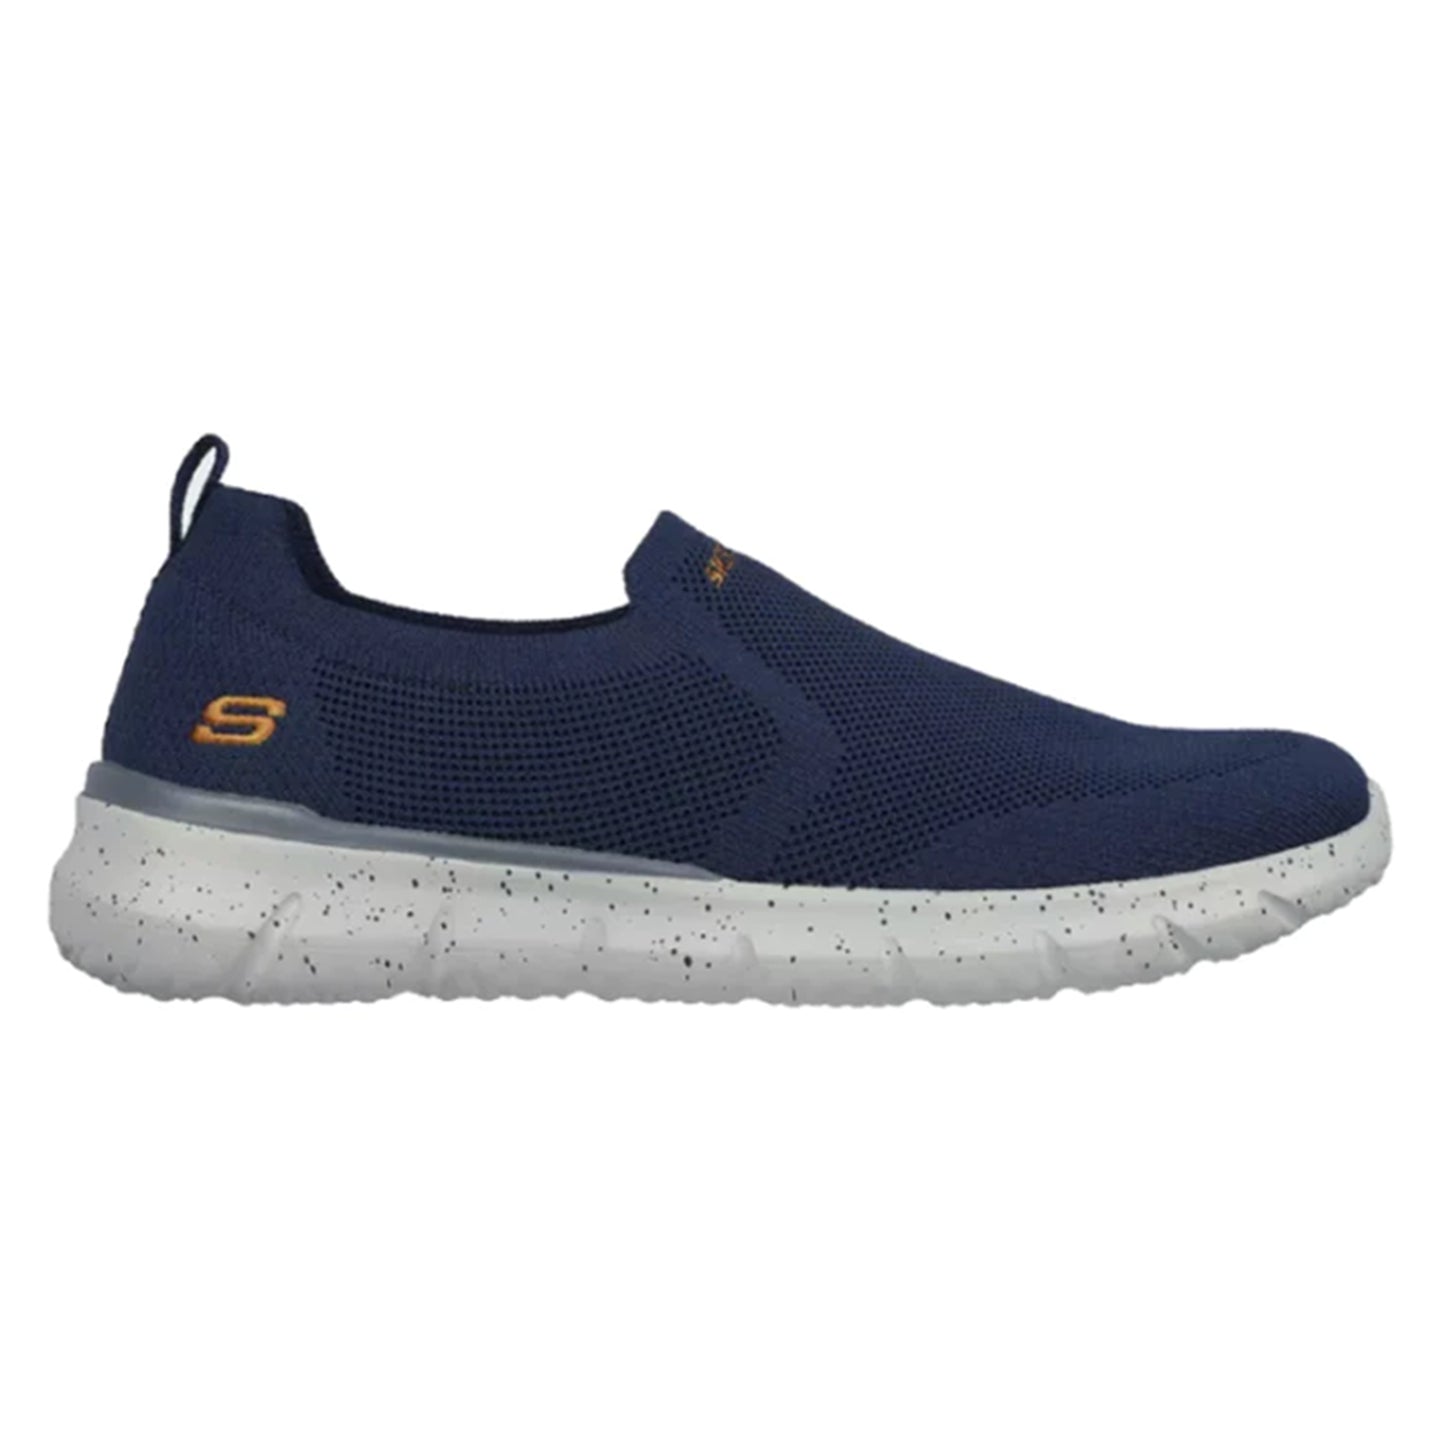 Skechers Del Retto Corwen Men's Running Shoes - Best Price online Prokicksports.com